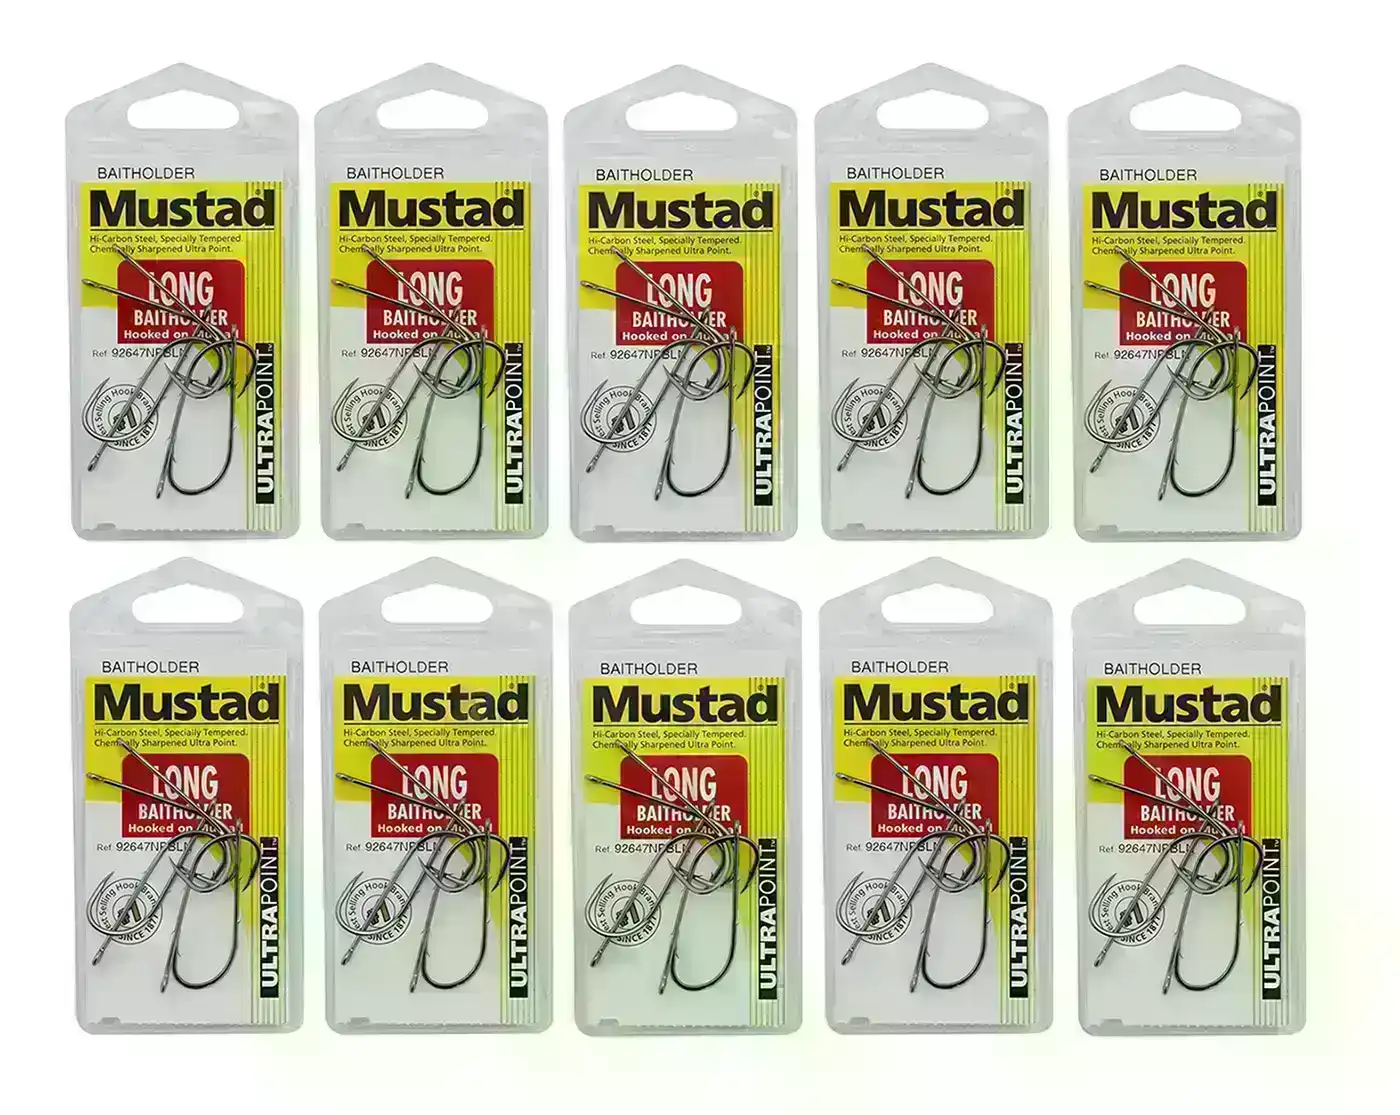 10 Packs of Mustad 92647NPBLN Long Baitholder Chemically Sharp